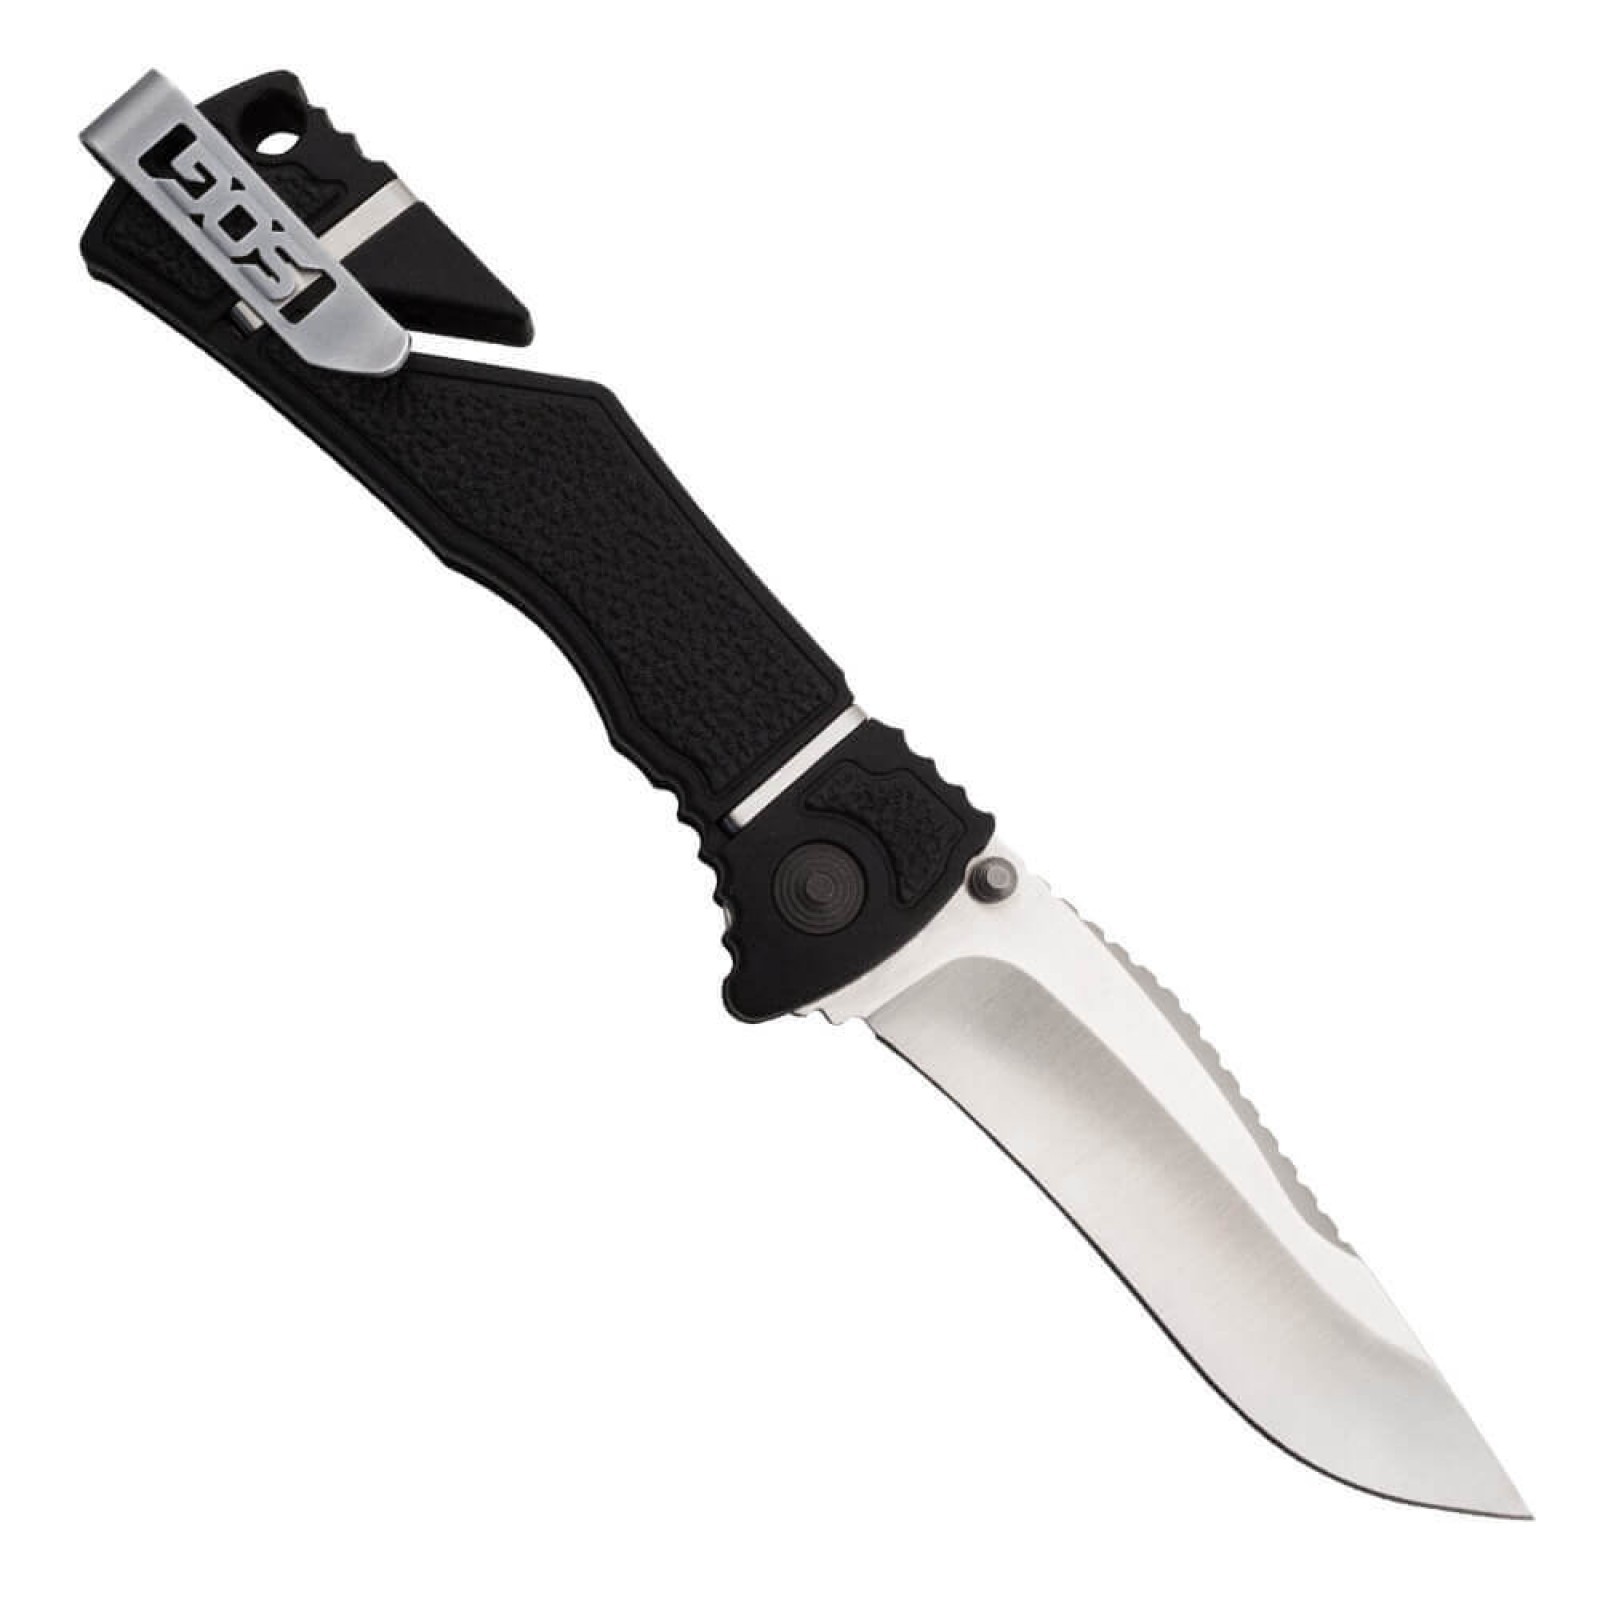 Складной нож TRIDENT ELITE - SOG TF101, сталь AUS-8, рукоять термопластик GRN с резиновыми вставками - фото 1